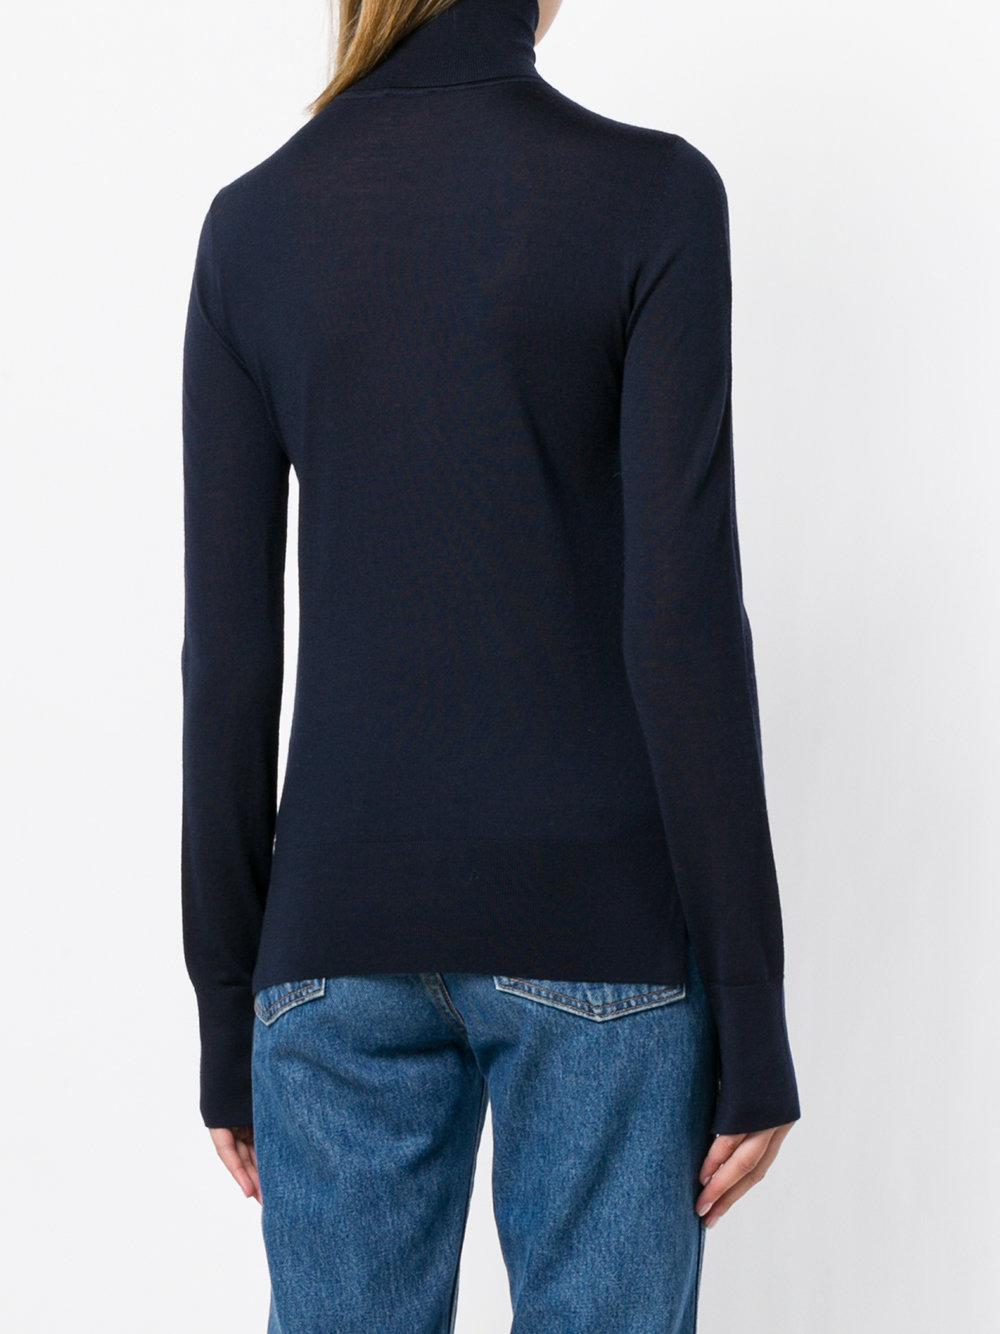 JOSEPH Wool Lightweight Turtleneck Sweater in Blue - Lyst